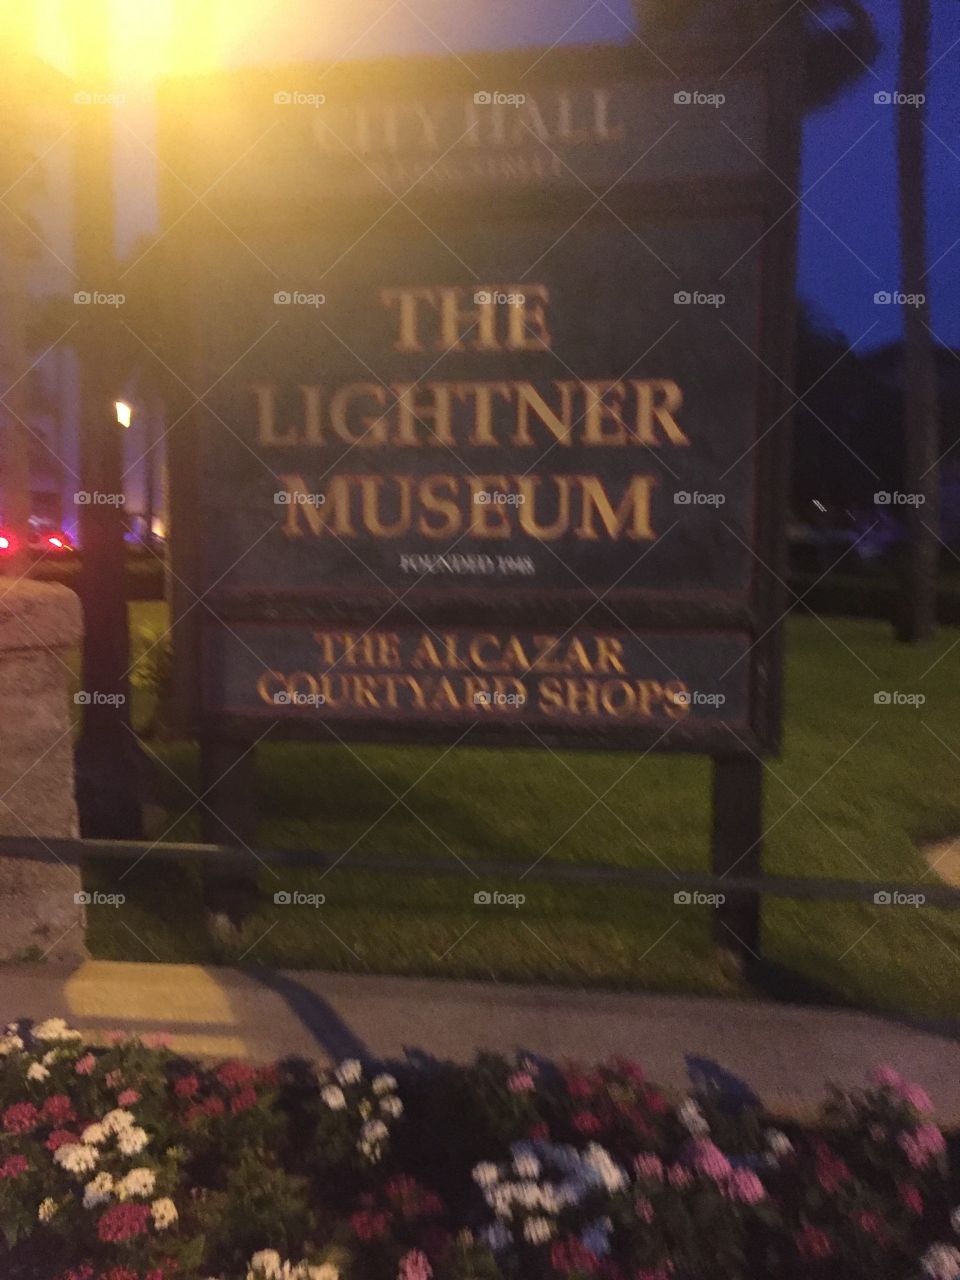 St Augustine Lightner’s museum